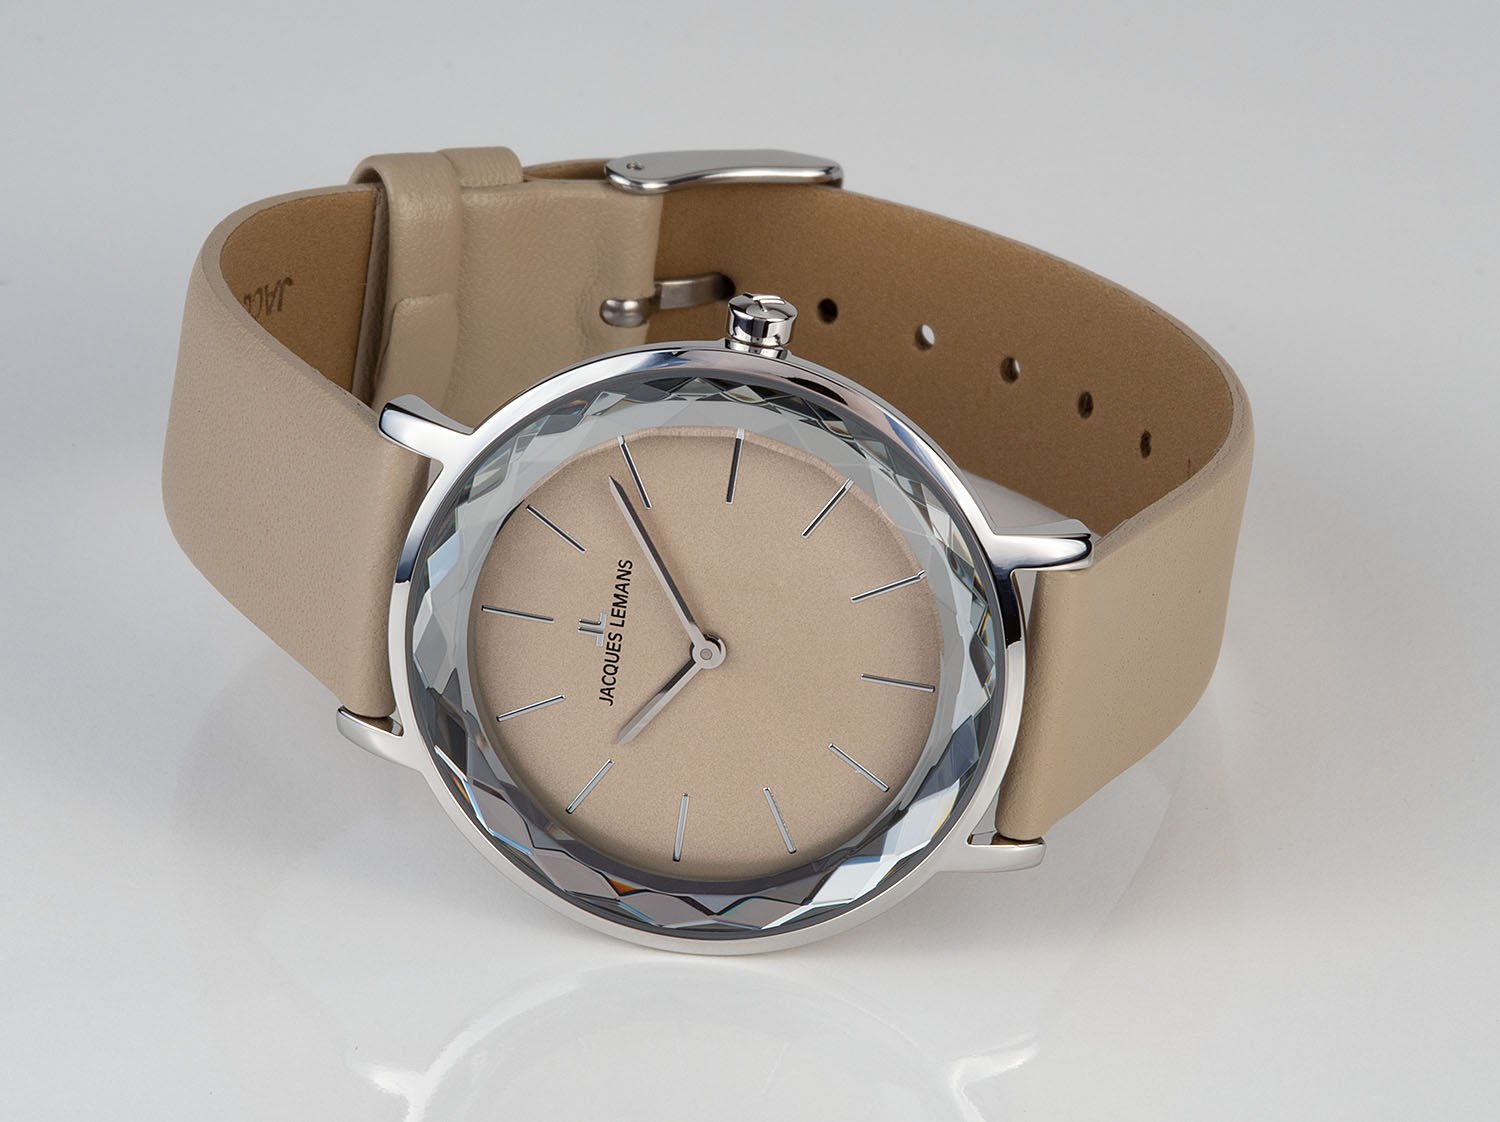 1-2054B, наручные часы Jacques Lemans